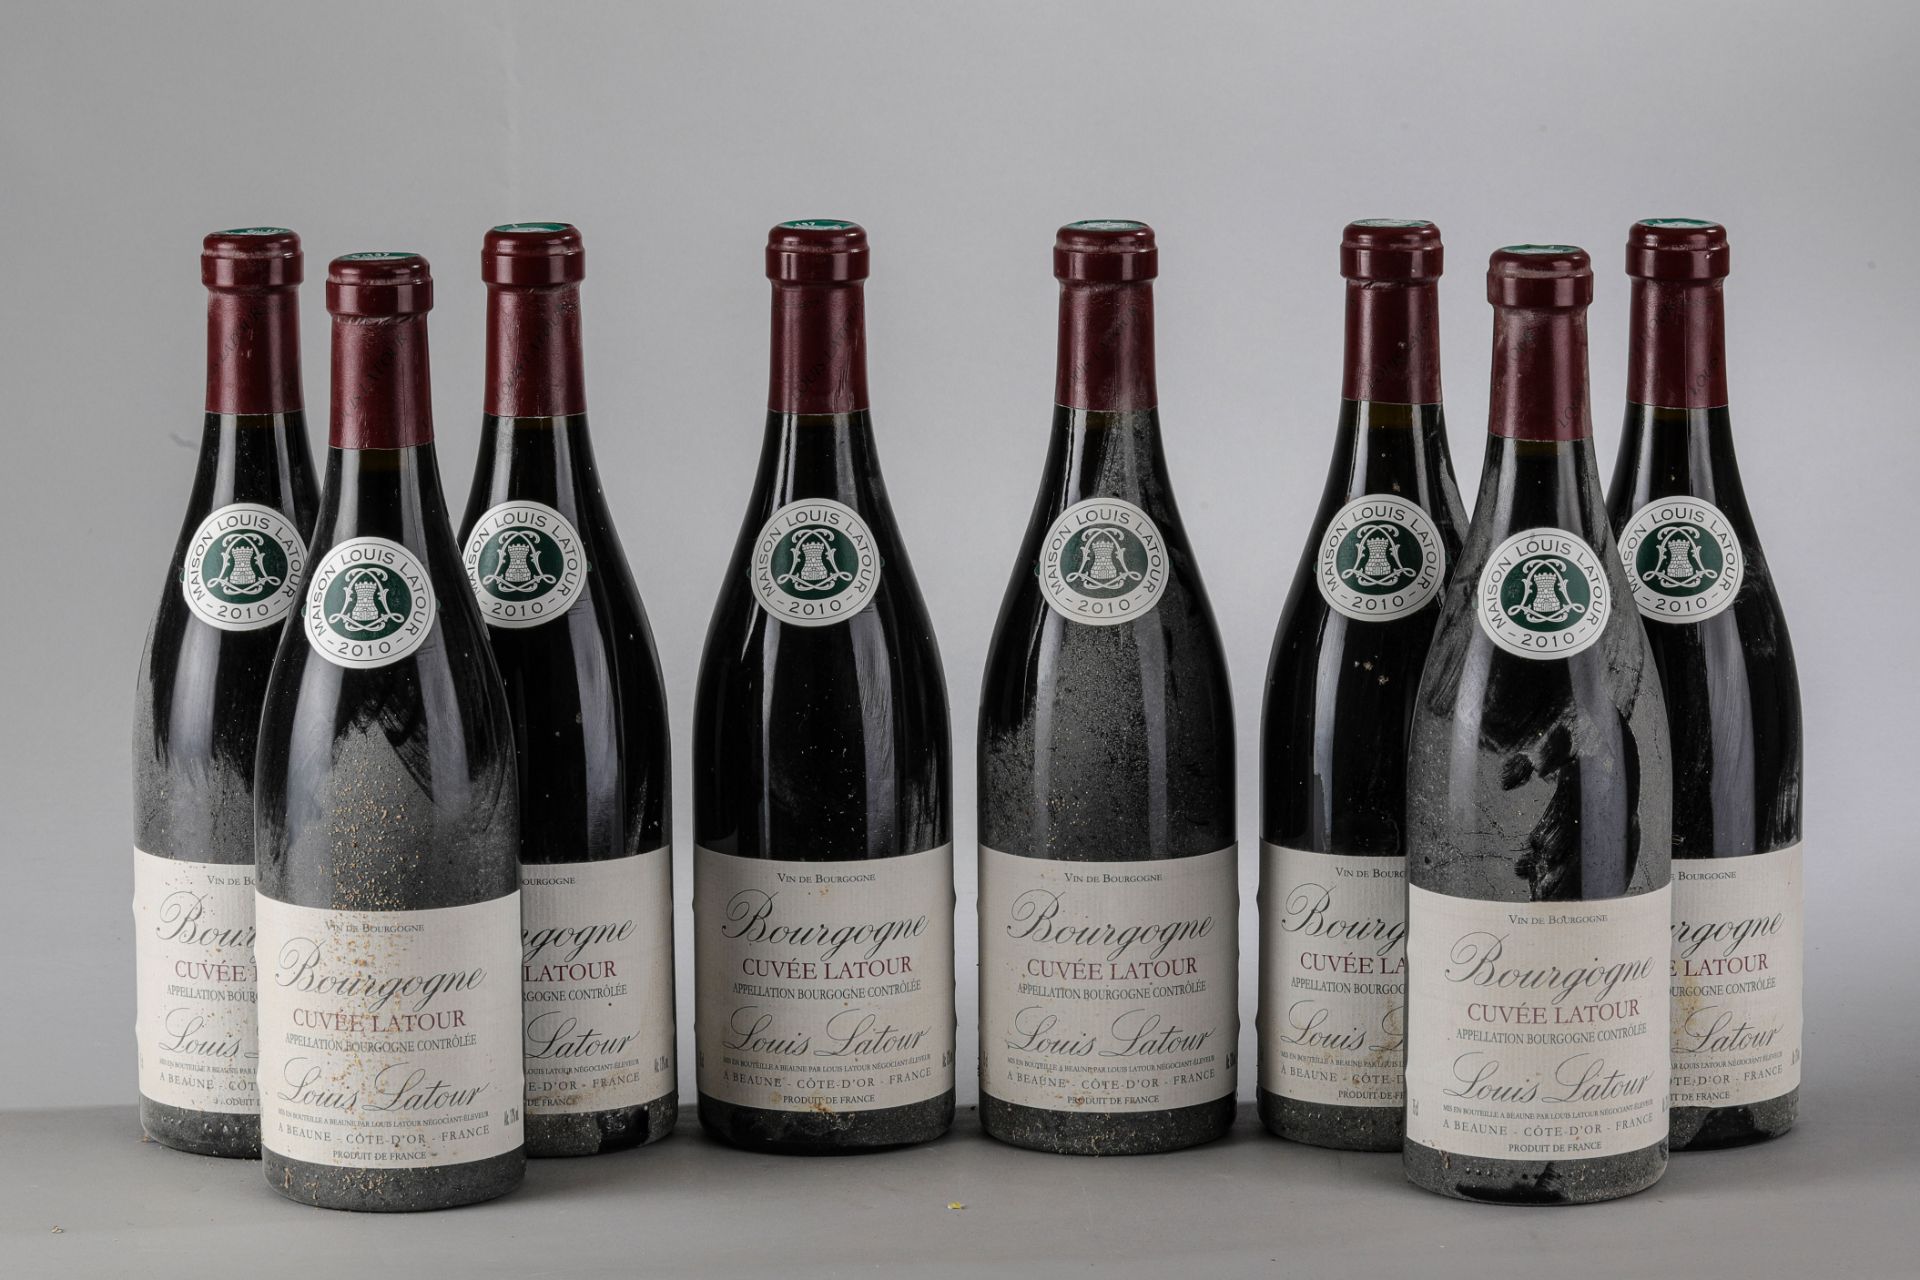 BOURGOGNE CUVEE LATOUR.2010. 8 bouteilles. Louis Latour.